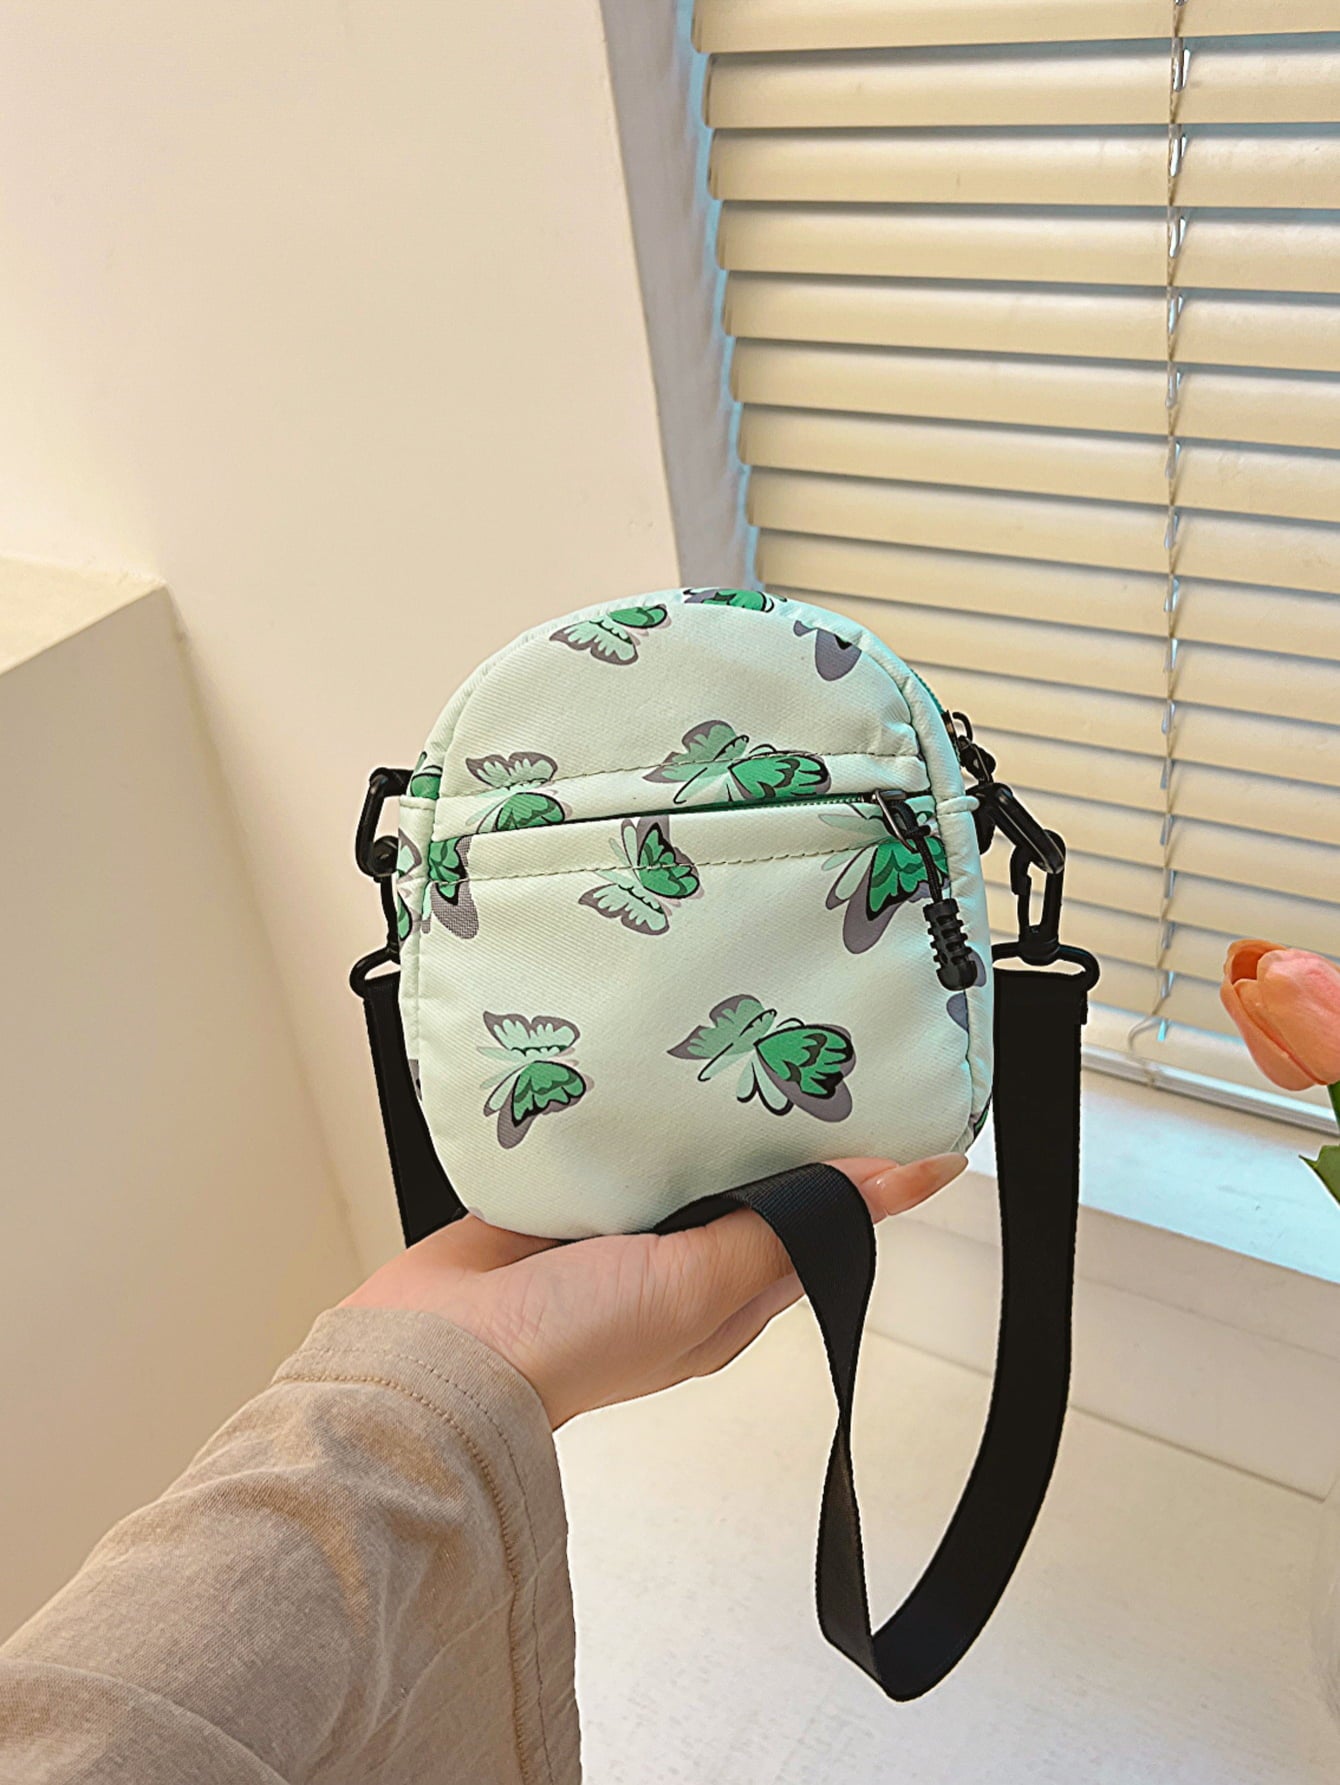 Butterfly Print Shoulder Bag